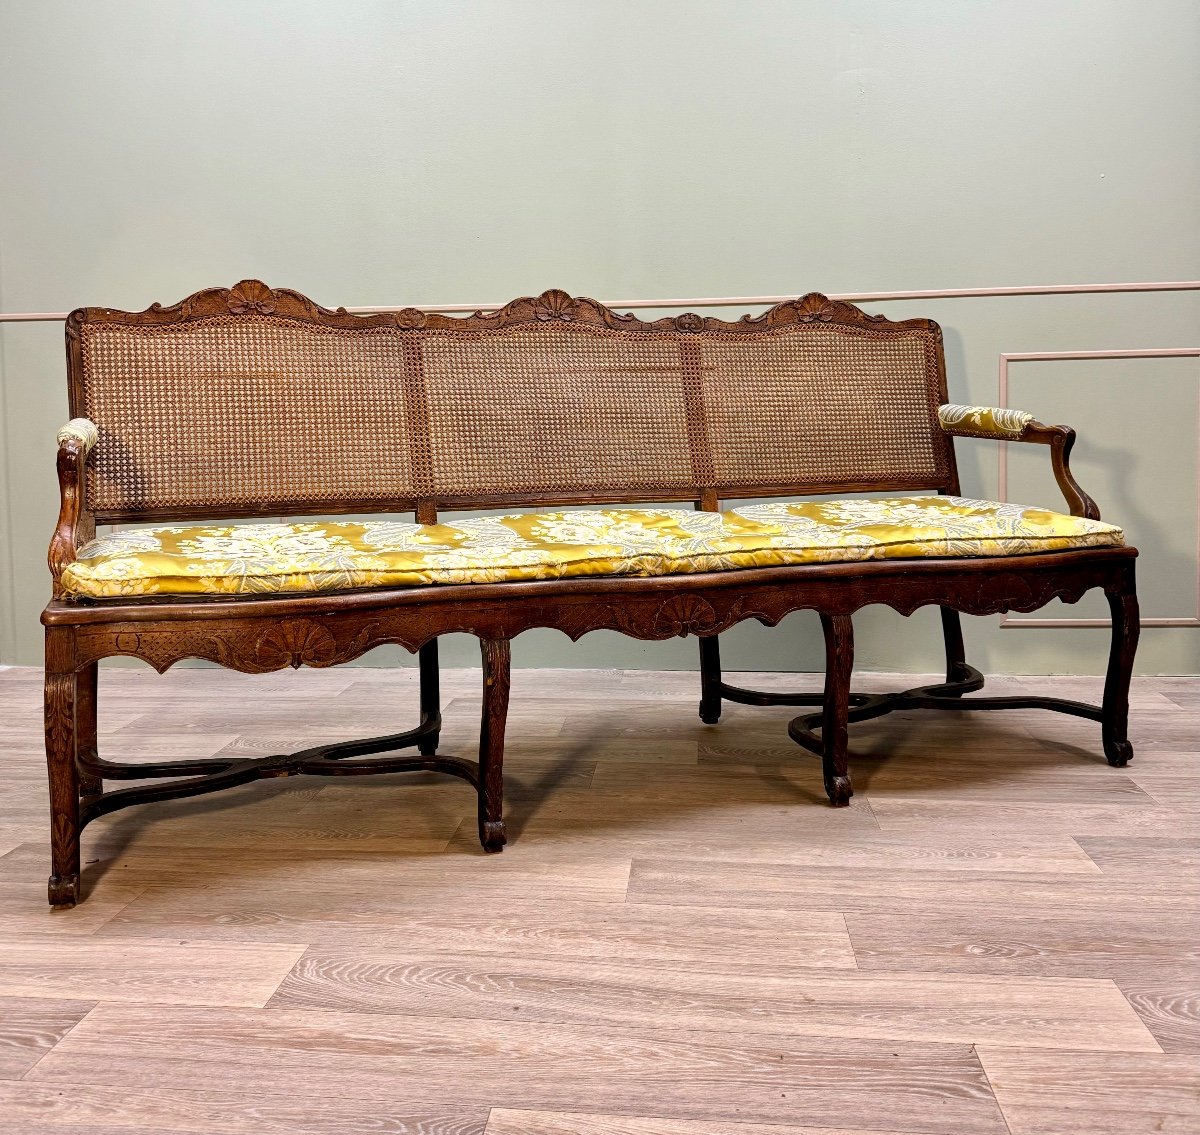 Bench Sofa In Cane Walnut From Regency Period XVIII Eme Century -photo-2